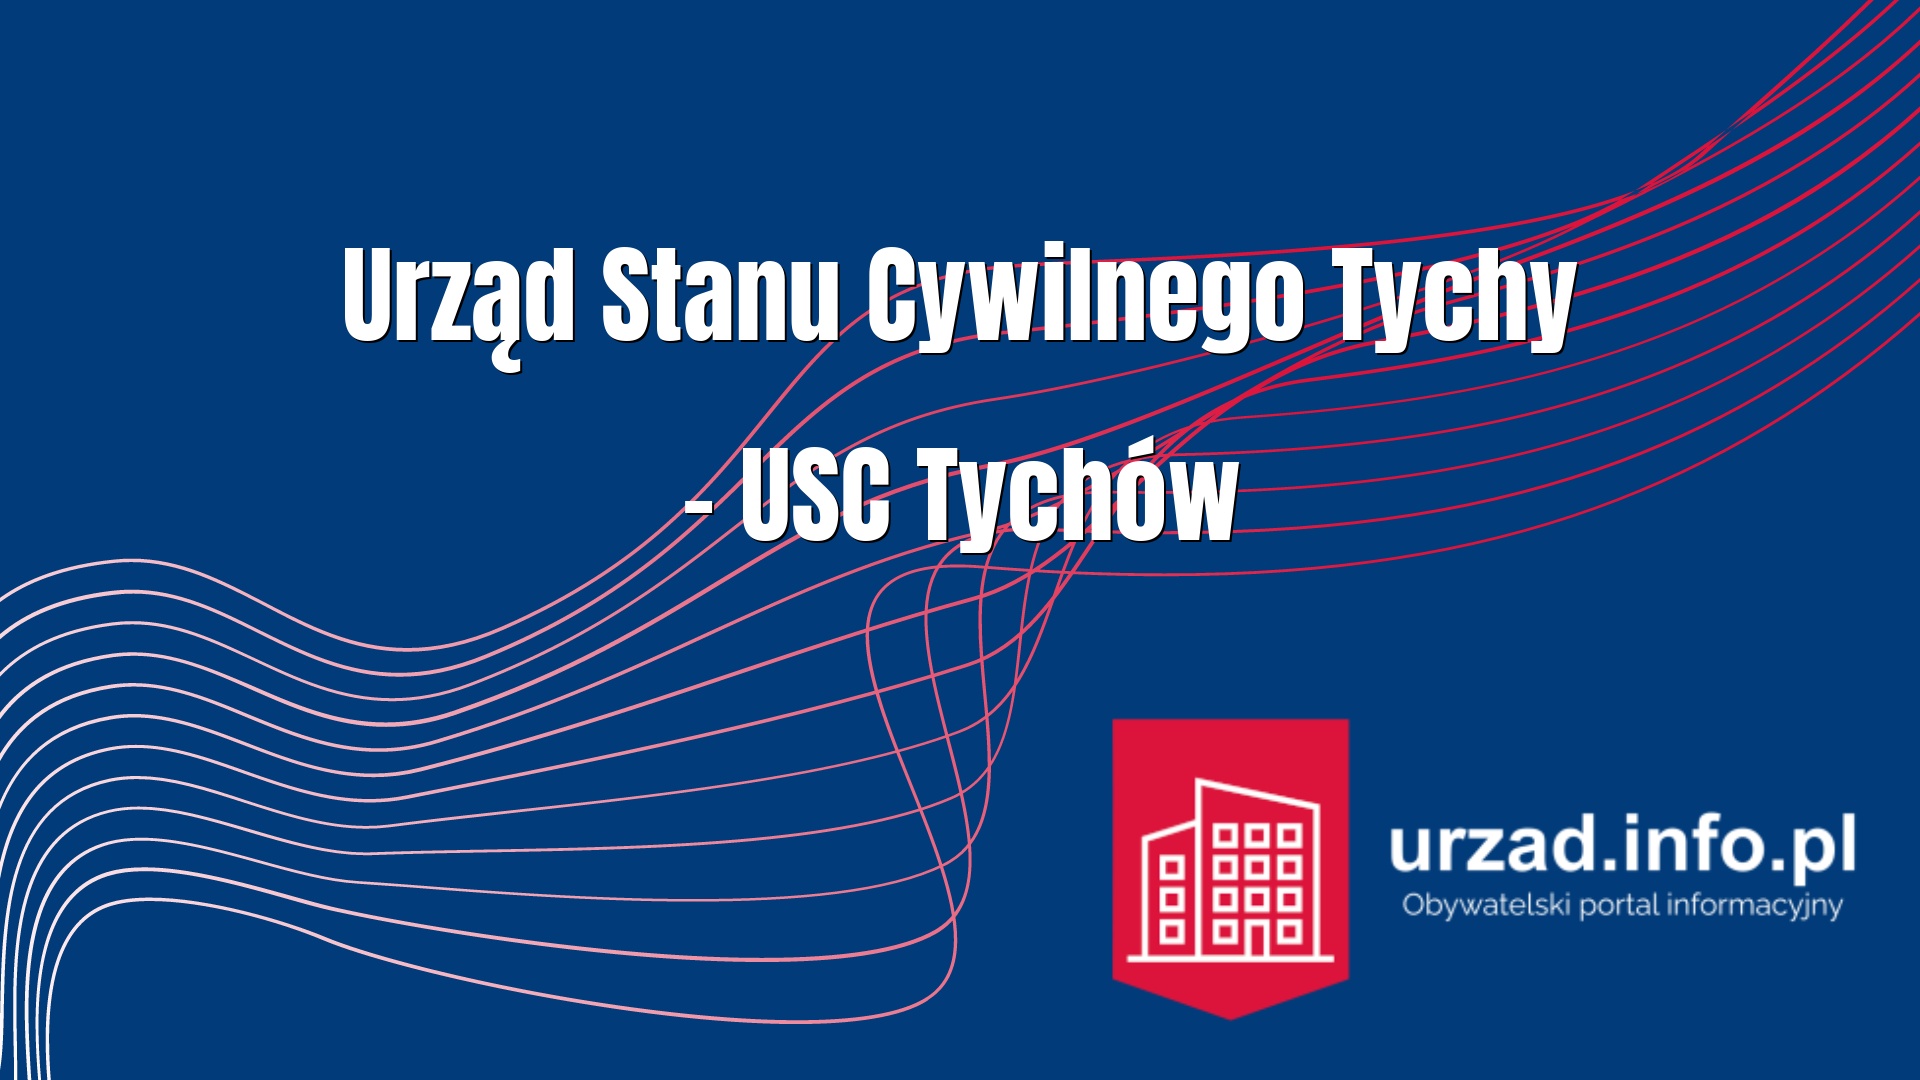 Urząd Stanu Cywilnego Tychy – USC Tychów